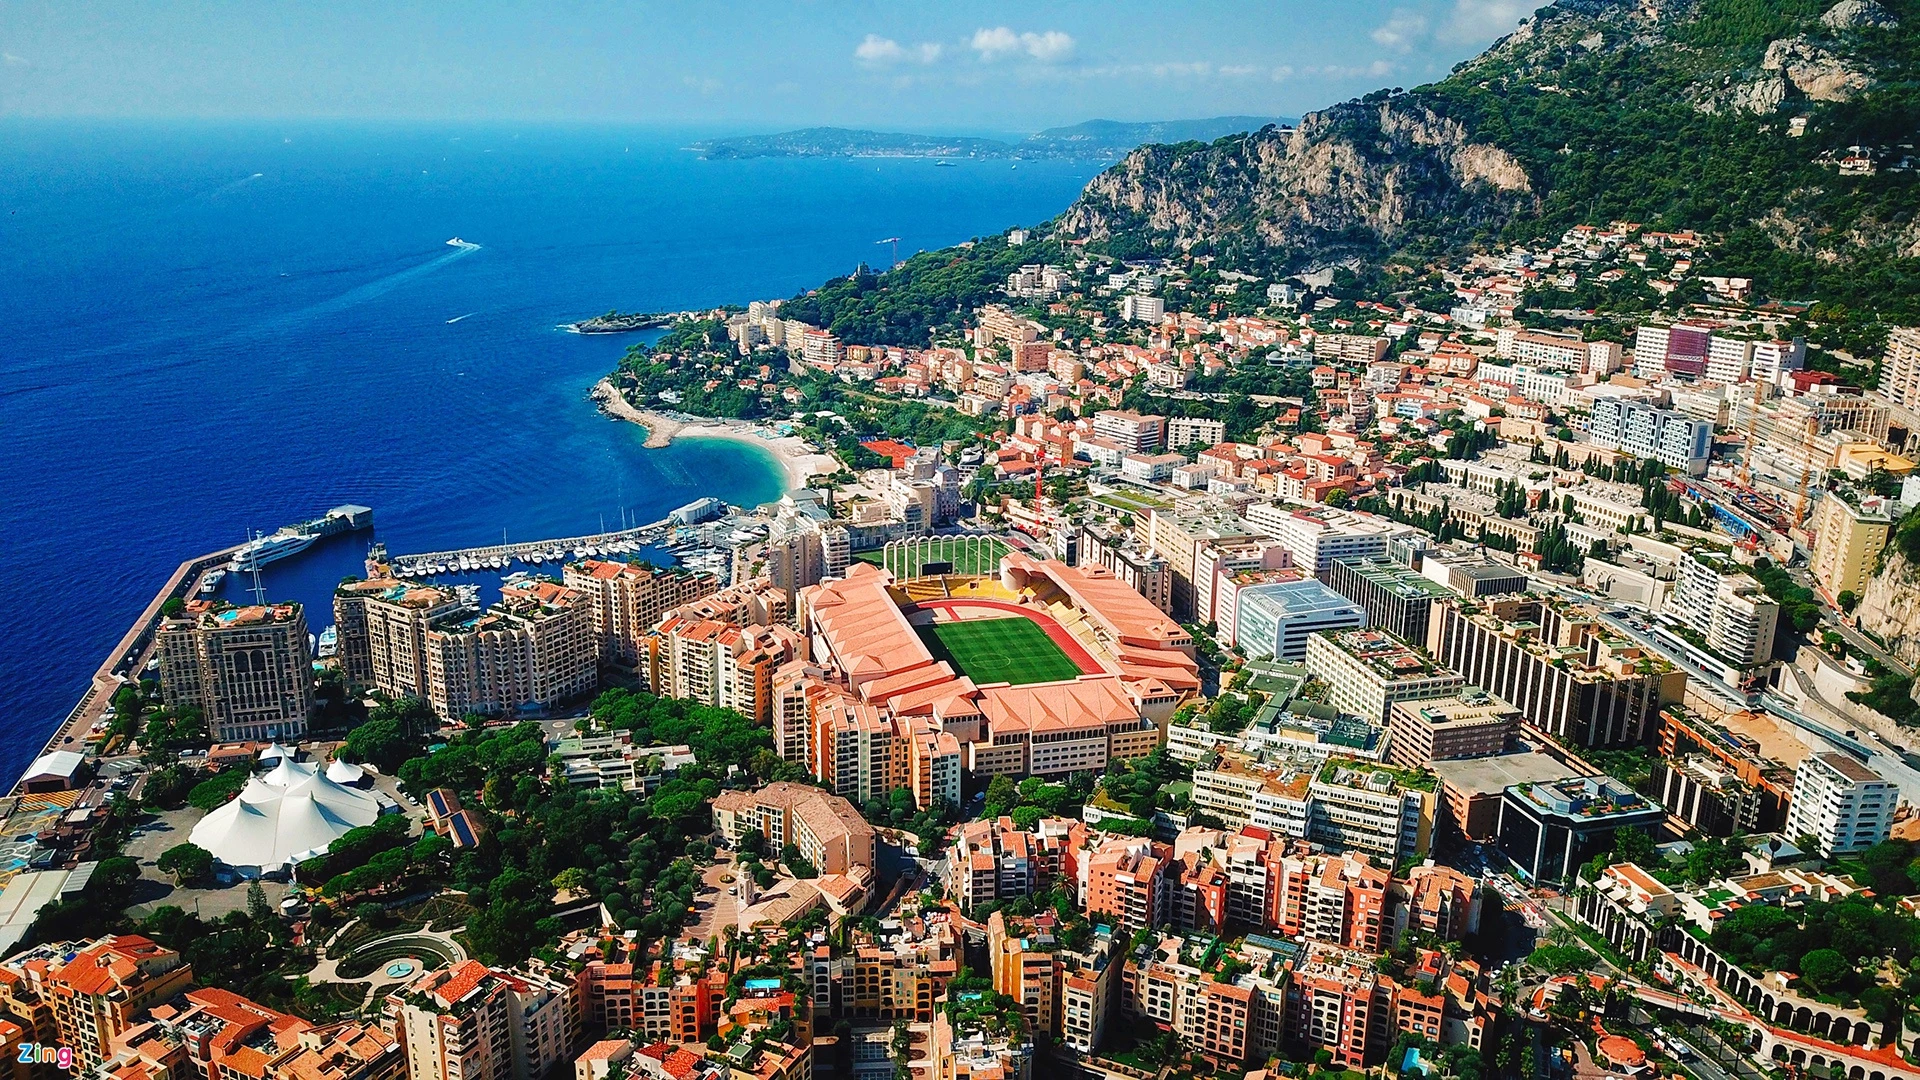 Tháng 8 xanh mát ở Monaco. Dưới cầu cảng, bên bờ biển Địa Trung Hải xanh mát, hàng nghìn du thuyền neo đậu san sát, trong đó có nhiều chiếc hạng sang tưởng như chỉ xuất hiện trên trang nhất những tạp chí danh giá hàng đầu. Những du thuyền được sắp xếp ngẫu nhiên nhưng ánh lên vẻ lộng lẫy, sang trọng, đẳng cấp tầm cỡ thế giới. Đó là điểm đặc biệt của Công quốc Monaco rộng chưa đầy 2 km2, nhỏ thứ 2 trên thế giới, chỉ lớn hơn Vatican, và tương đương công viên Trung tâm ở New York (Mỹ). Đất nước này có 3 mặt giáp với biển Địa Trung Hải, tạo nên một xứ sở nhiệt đới tuyệt đẹp.